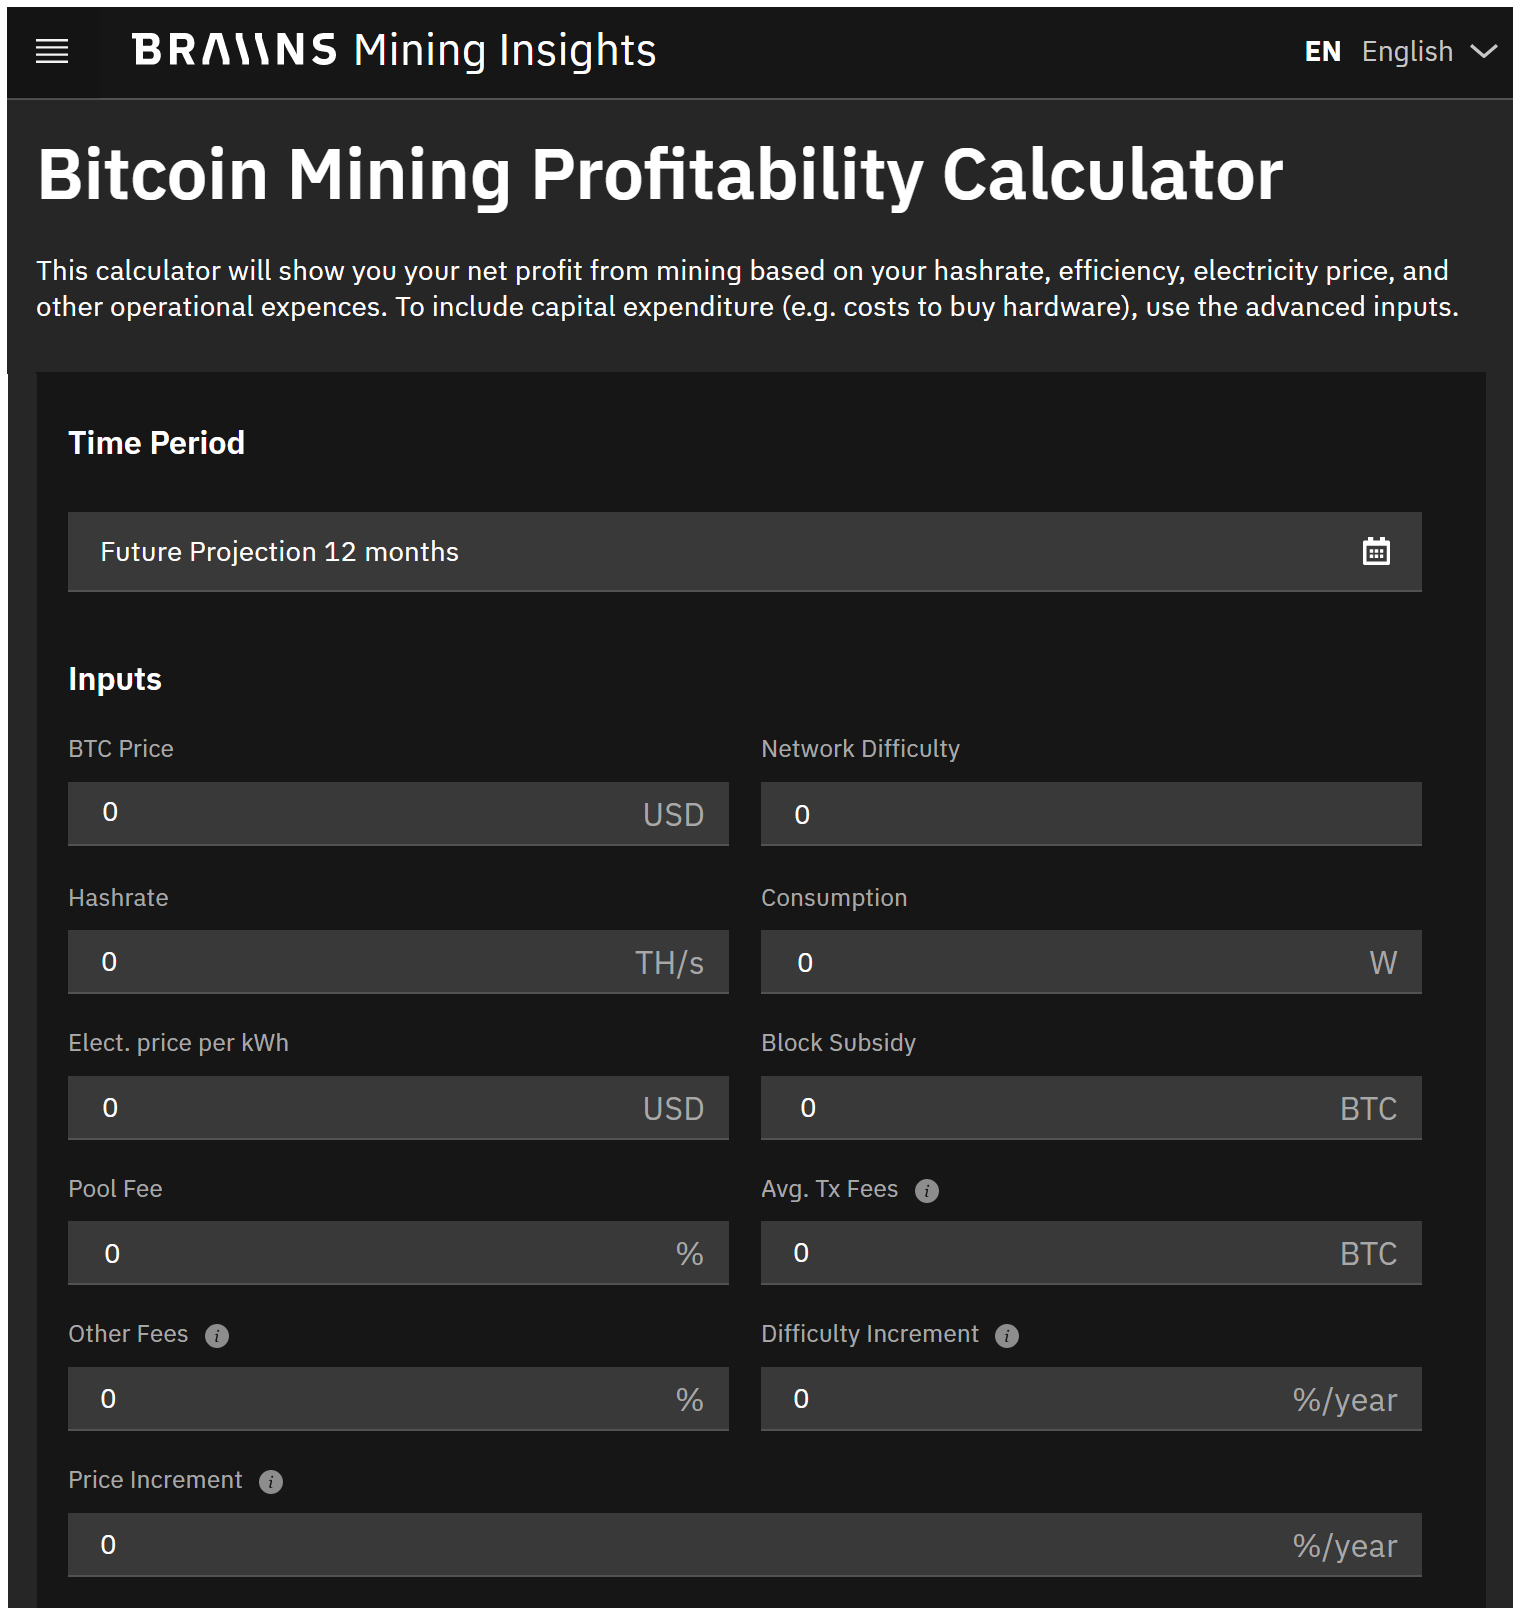 Alloscomp : Bitcoin Mining Calculator